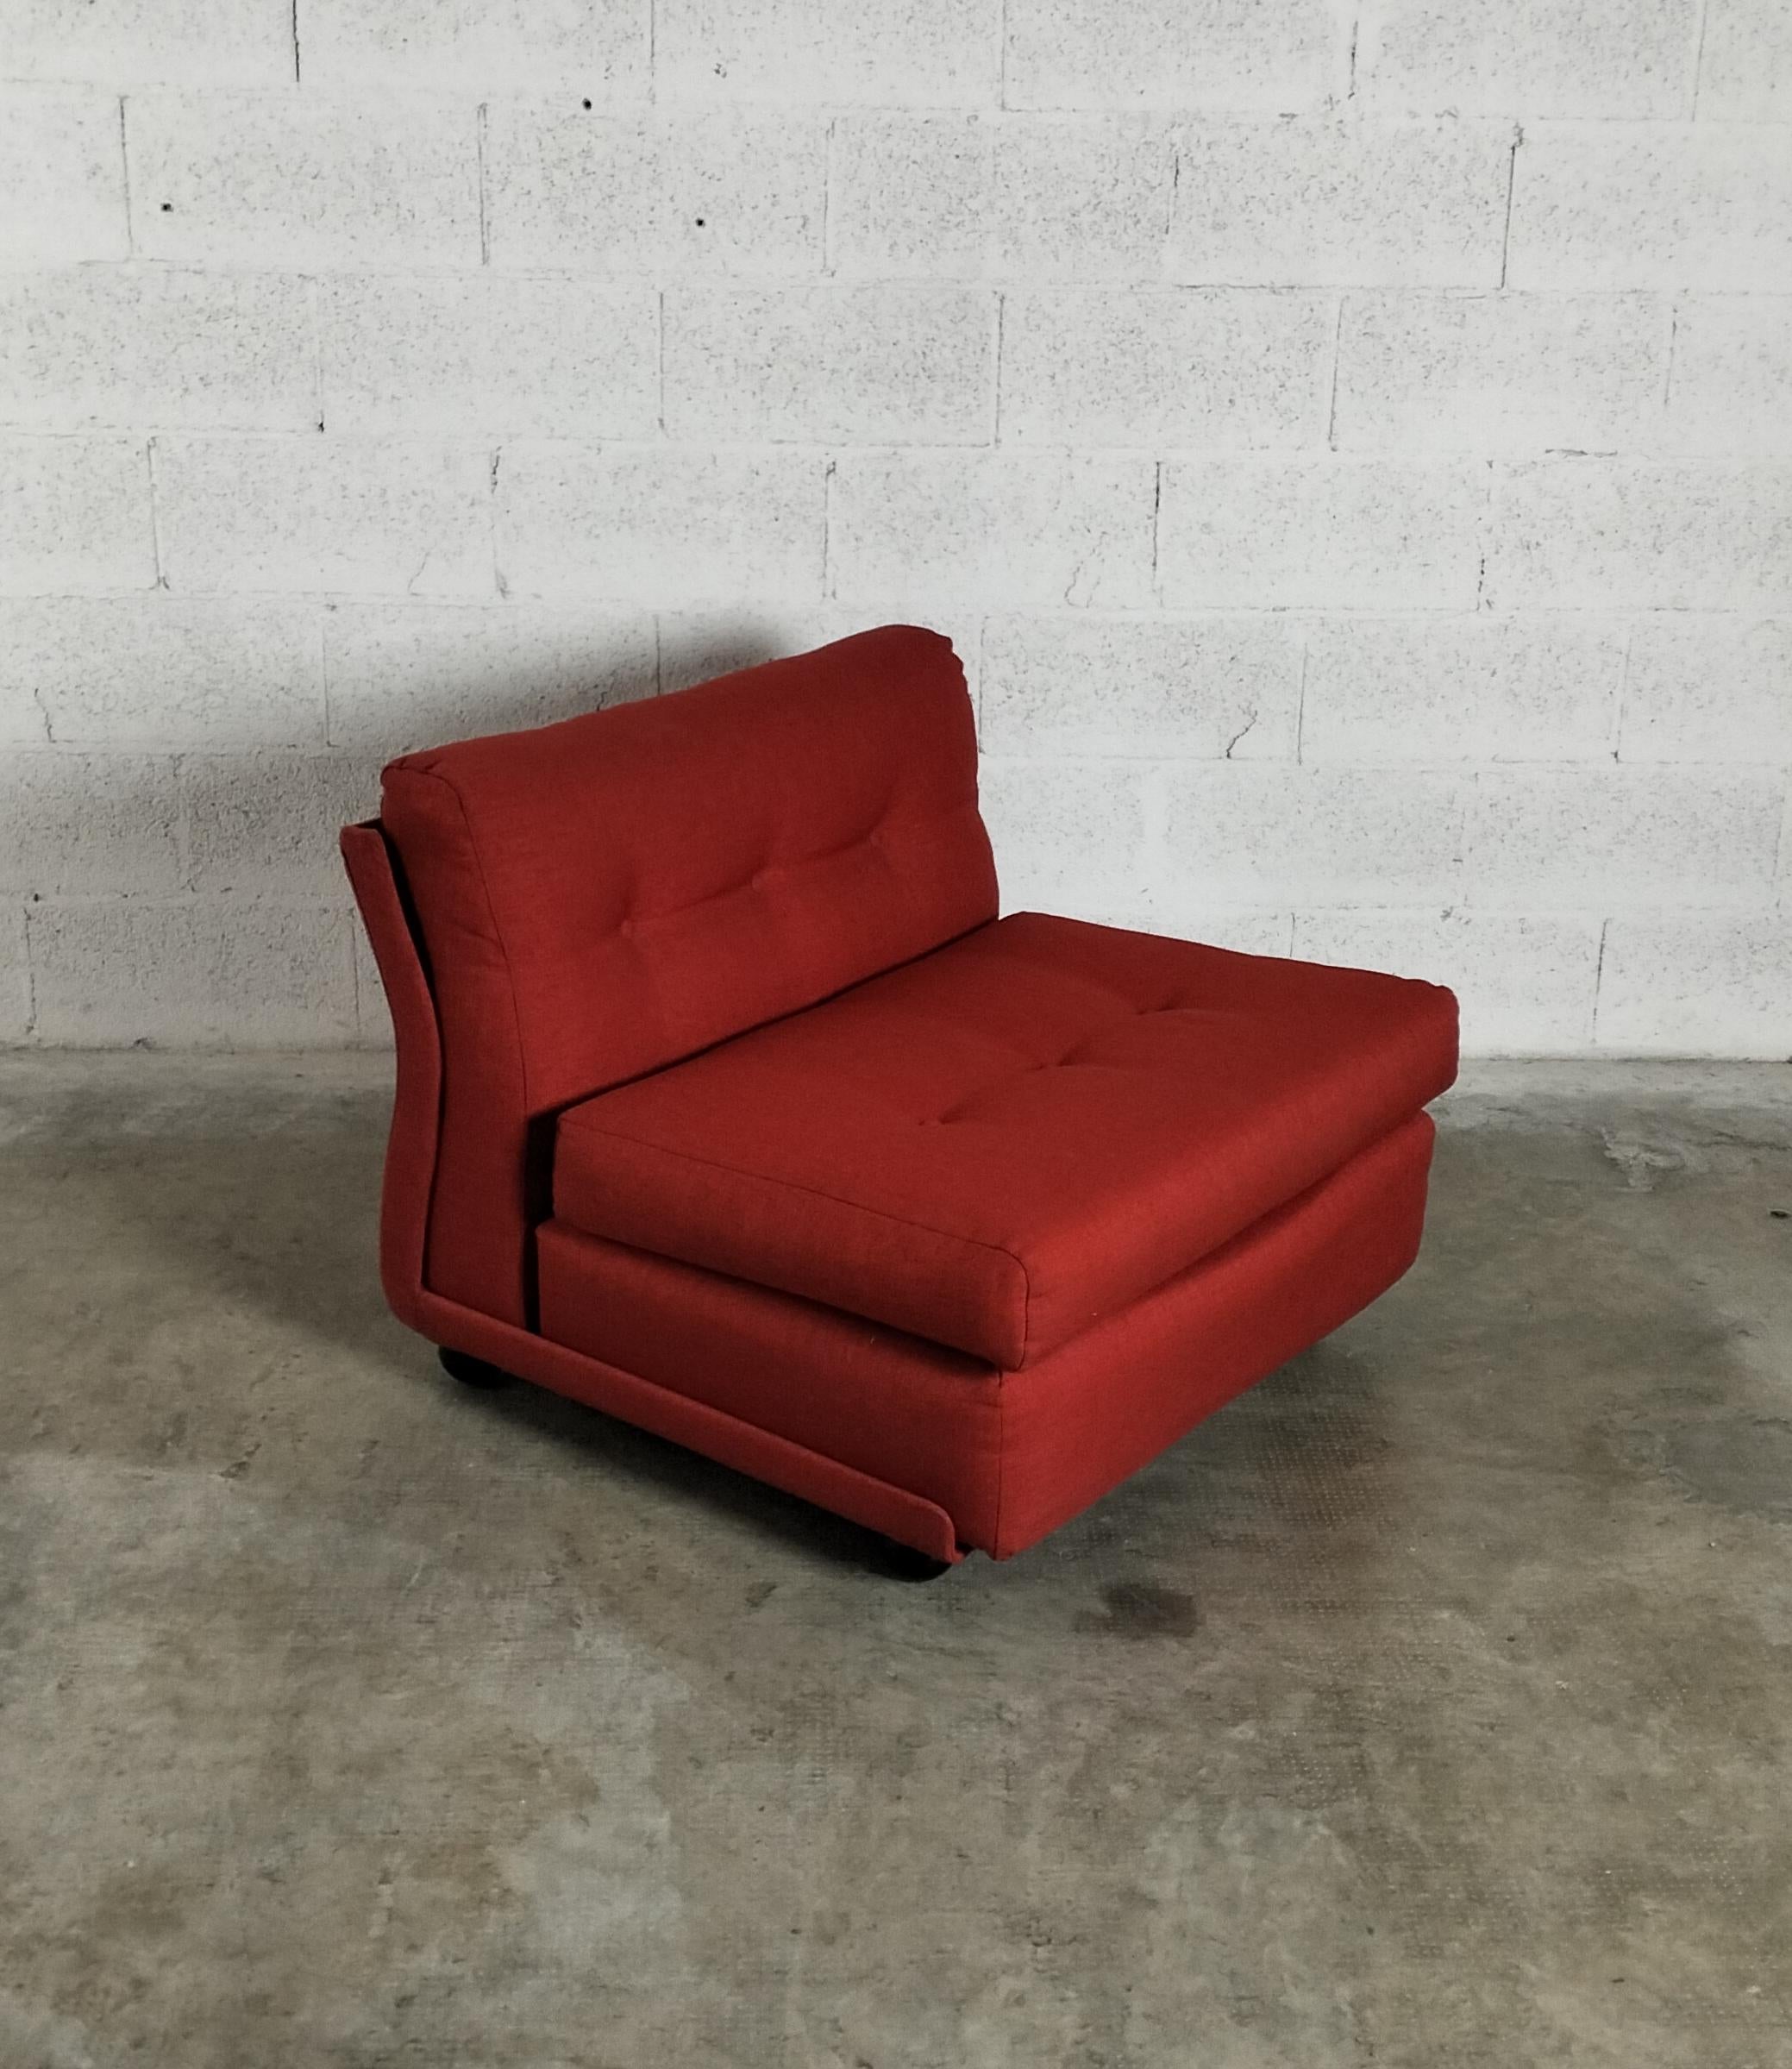 Amanta-Sessel aus dem Jahr 1966 (dem Gründungsjahr des Unternehmens).

Die Lösung der vom gepolsterten Teil getrennten und gepolsterten Schale aus Kunststoff definiert den neuen Standard der neuen Generation von Sitzmöbeln und verwandelt in der Tat